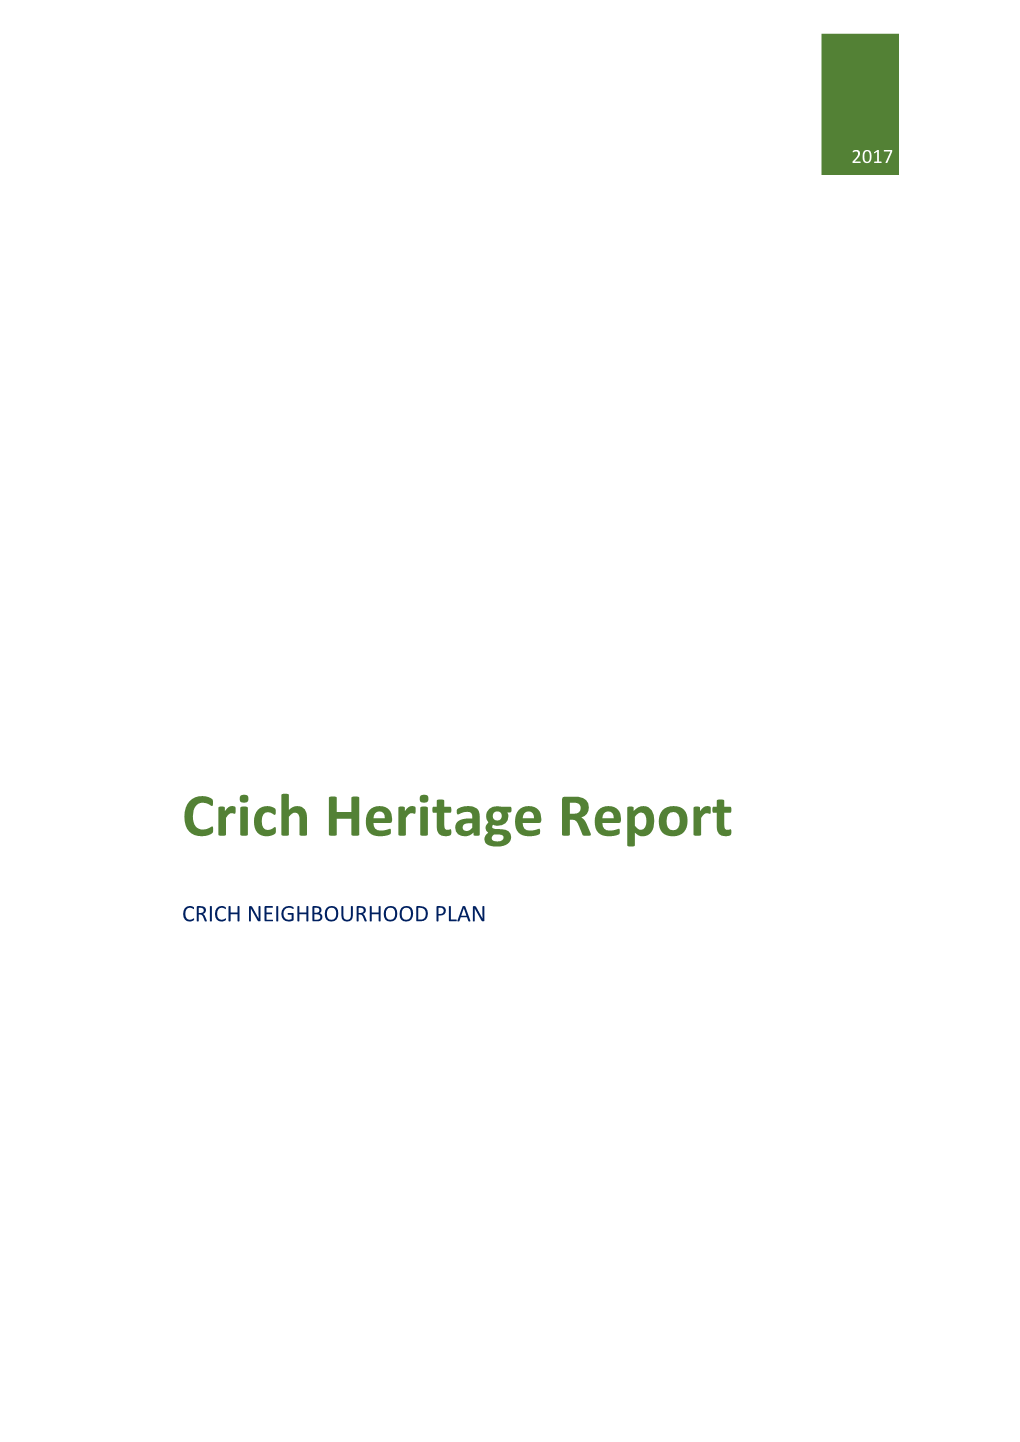 Appendix 4 Crich Heritage Report Crich NP